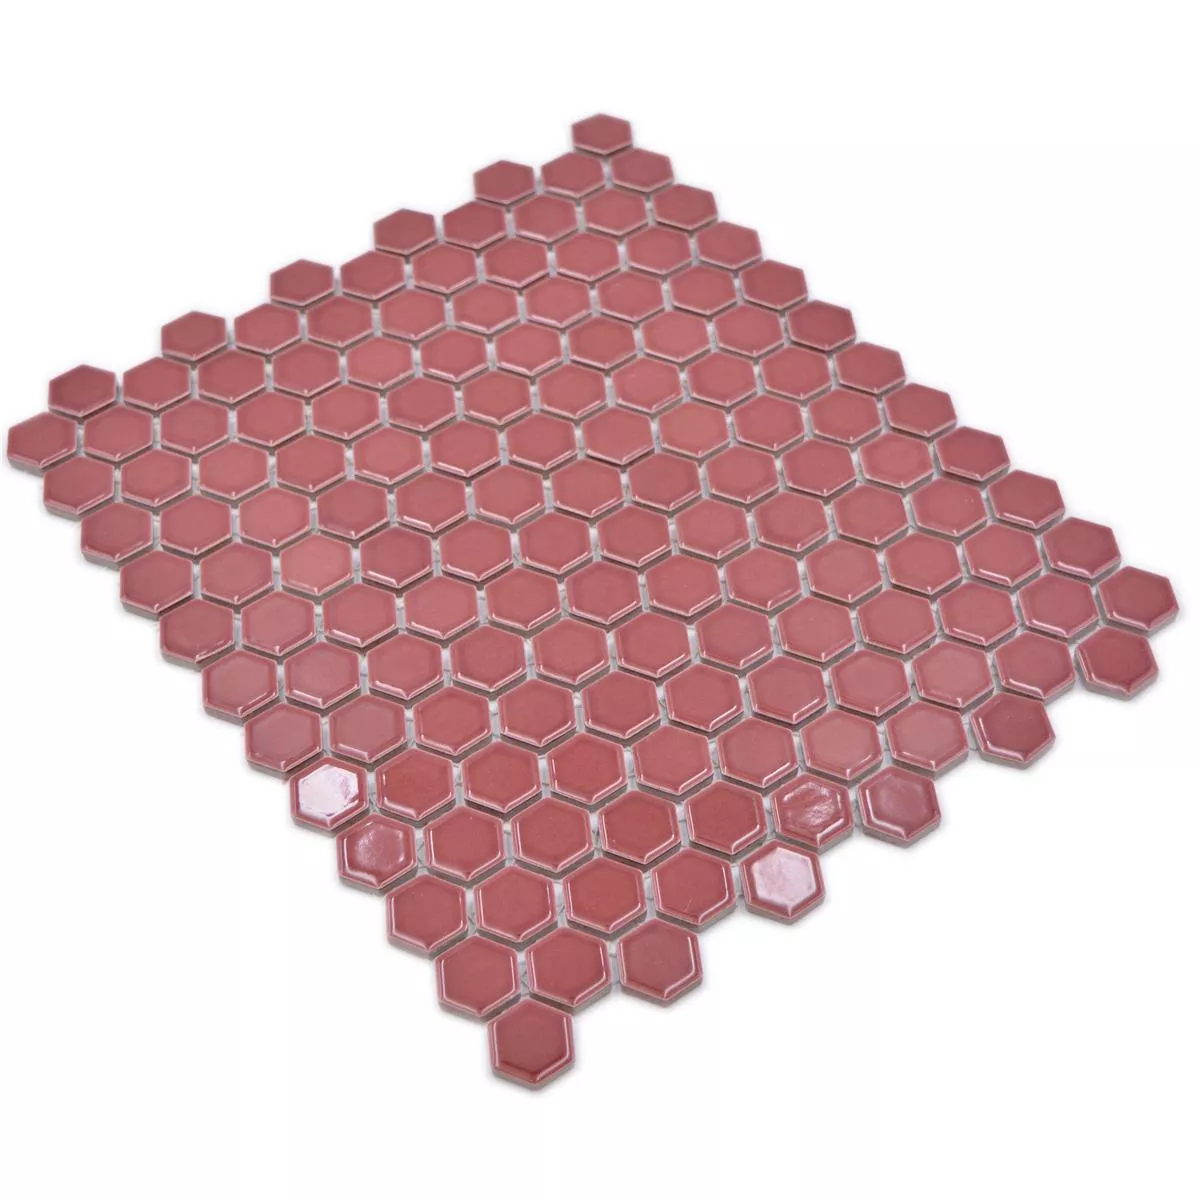 Mosaico Cerámico Salomon Hexagonales Bordeaux Rojo H23